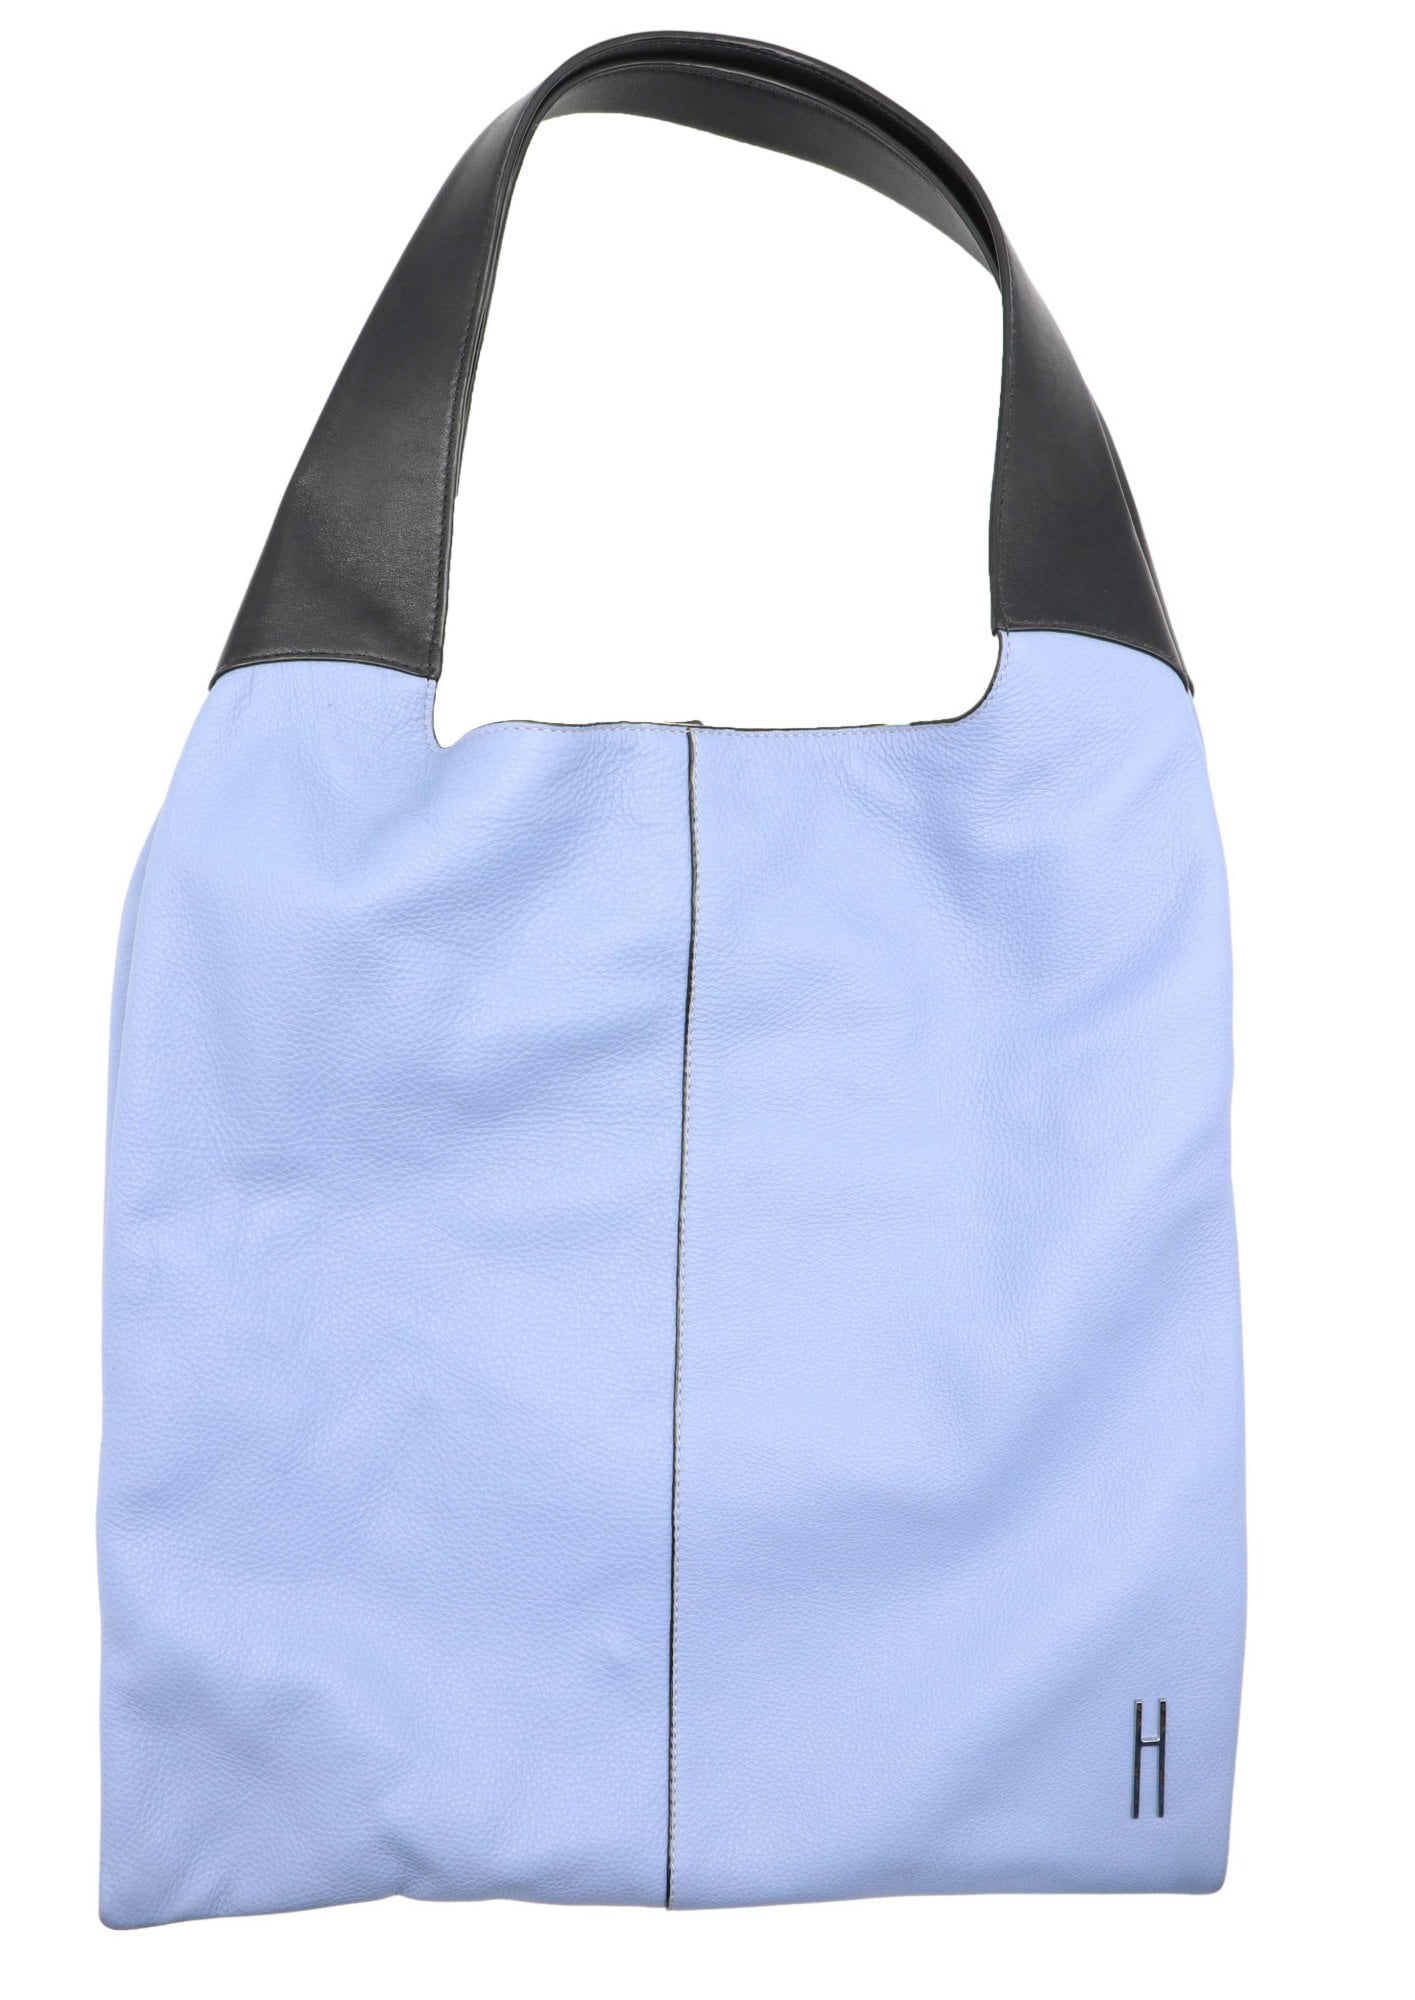 Nike Hayward Futura 2.0 Backpack (Dark Grey) : Amazon.in: Bags, Wallets and  Luggage